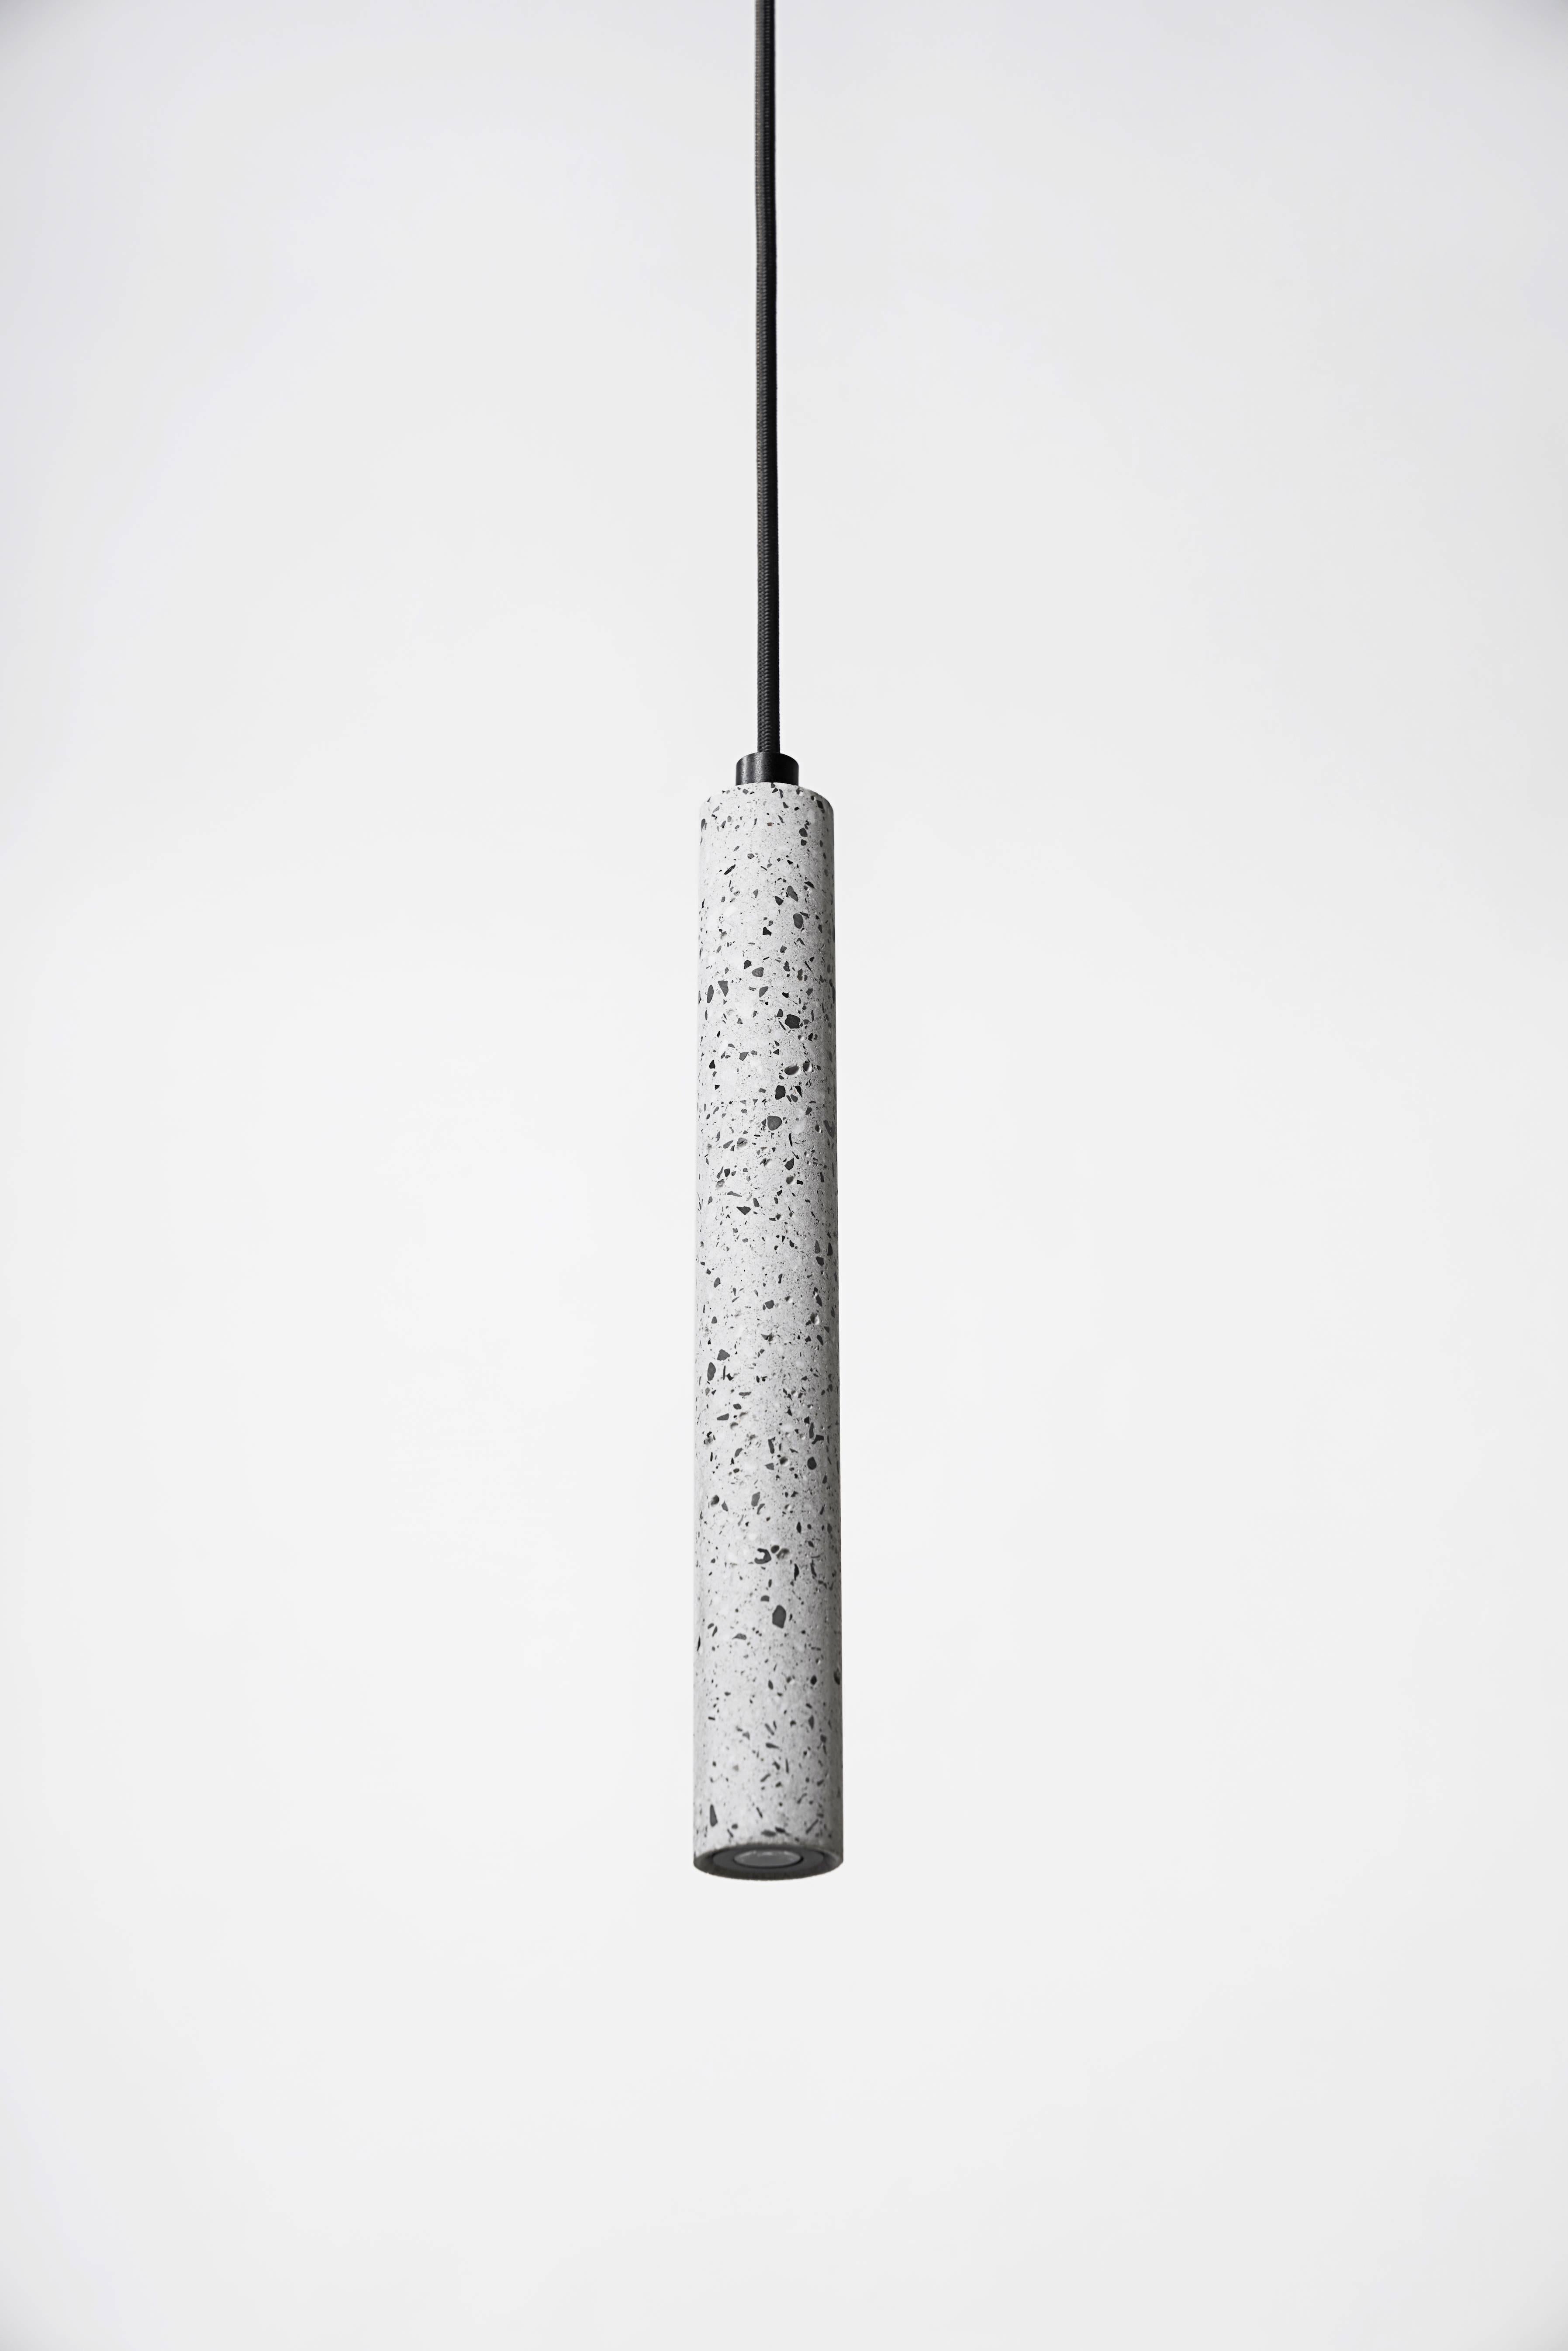 Weiße Deckenleuchte aus Terrazzo und Beton, entworfen vom kantonesischen Studio Bentu Design.

(einzeln erhältlich)
 
Maße: 31 cm hoch; 4 cm Durchmesser
Kabel: 2 Meter schwarz (einstellbar)
Lampentyp: G9 LED 1.5W.

Nur Messingausführung.

die